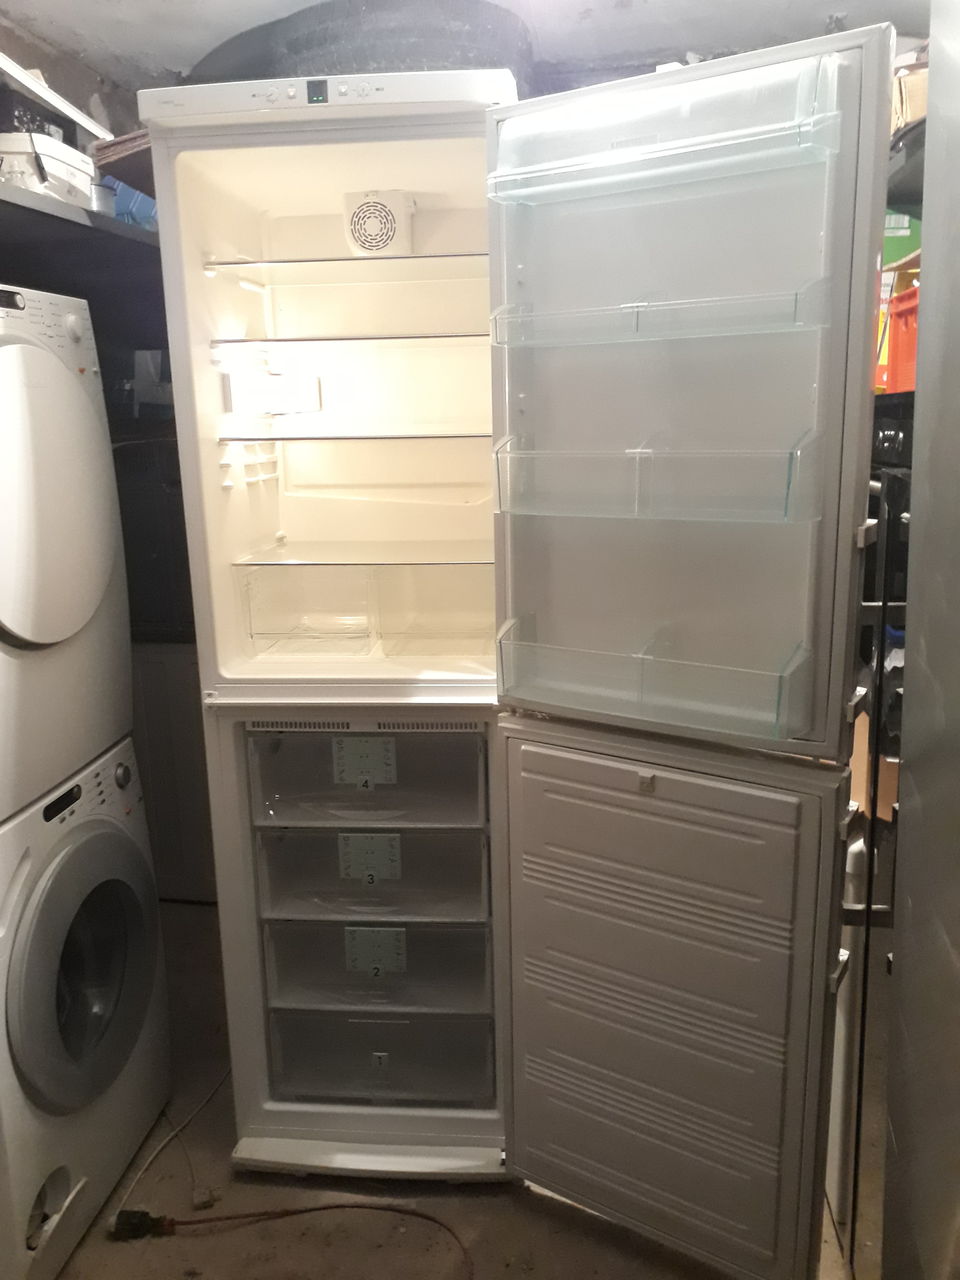 холодильник с 4 полками в морозильной камере